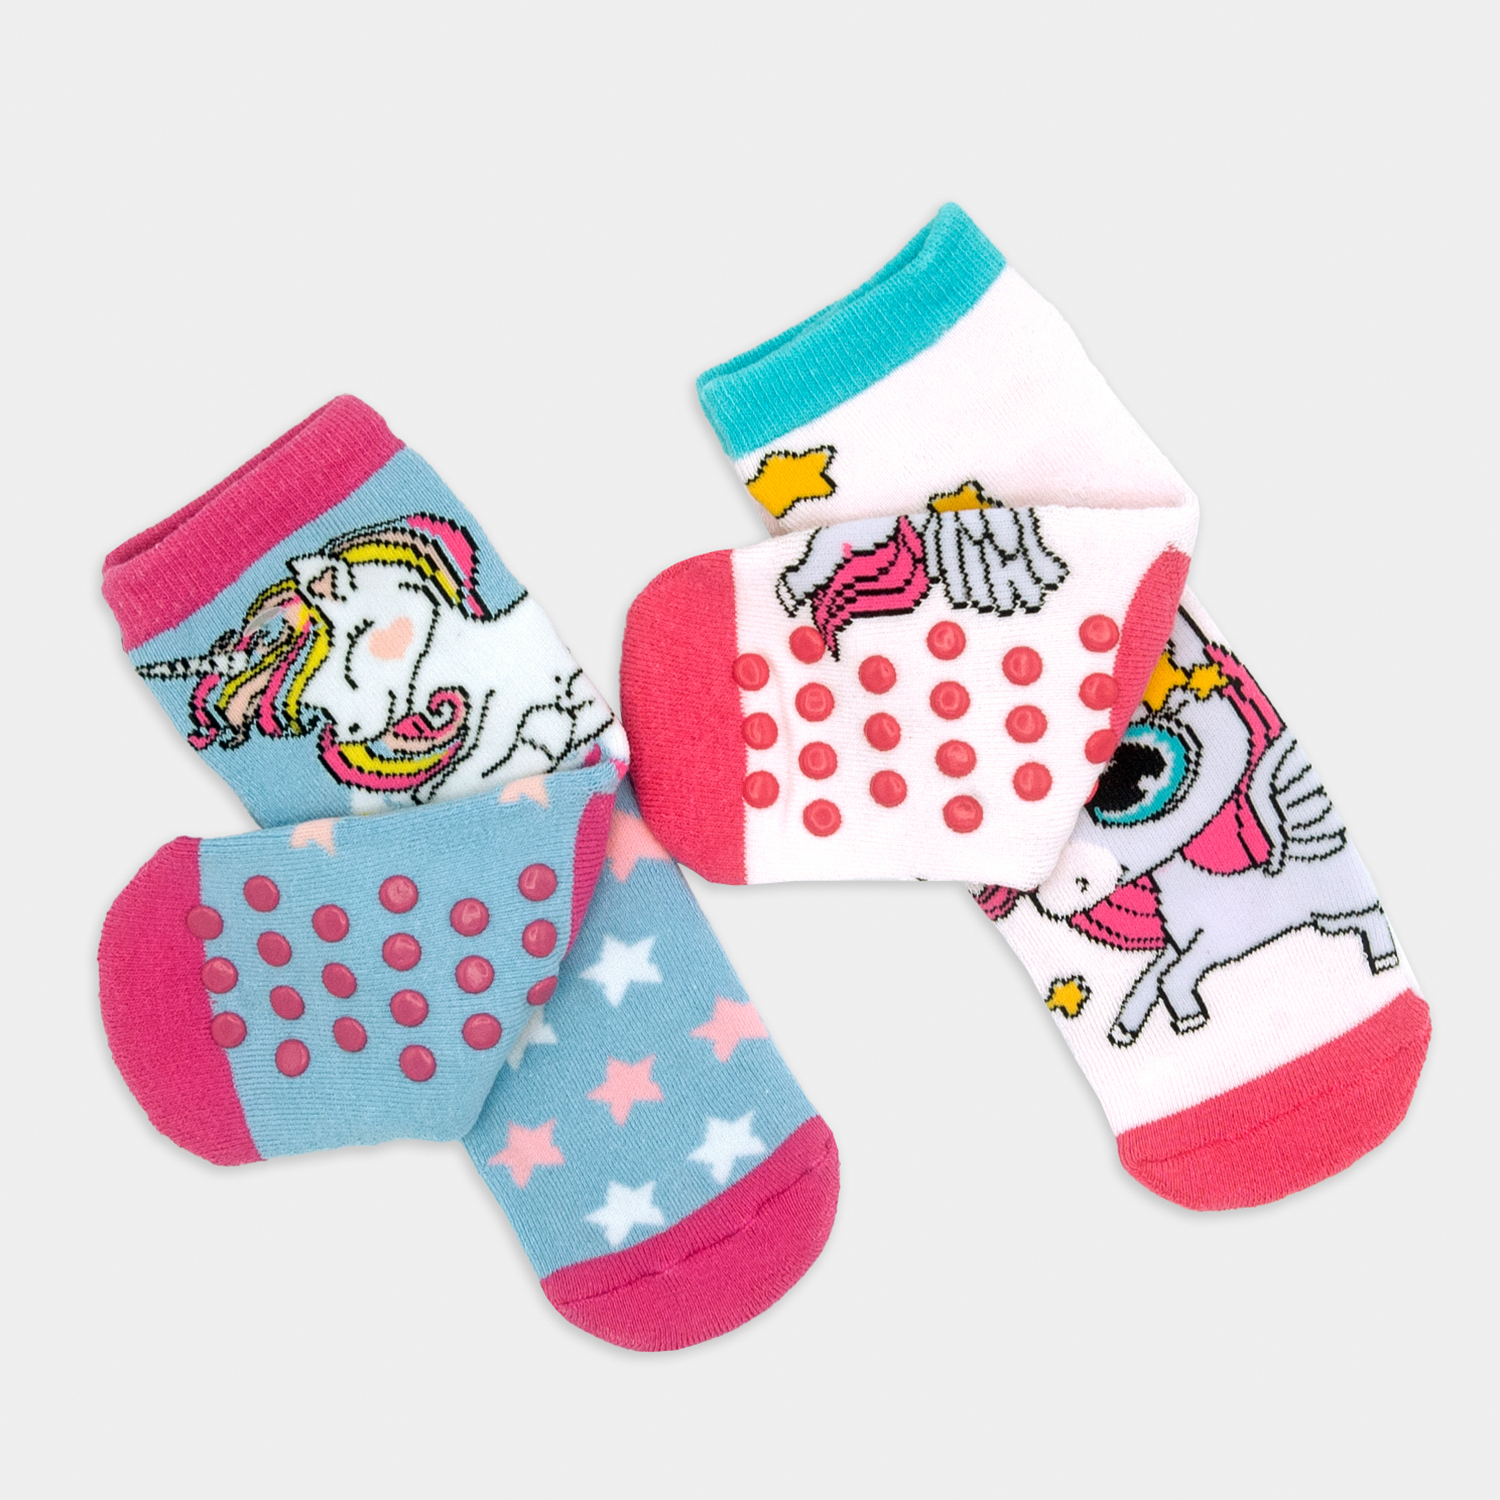 Ciocca calcetines antideslizantes para niñas: a la venta a 2.99€ en